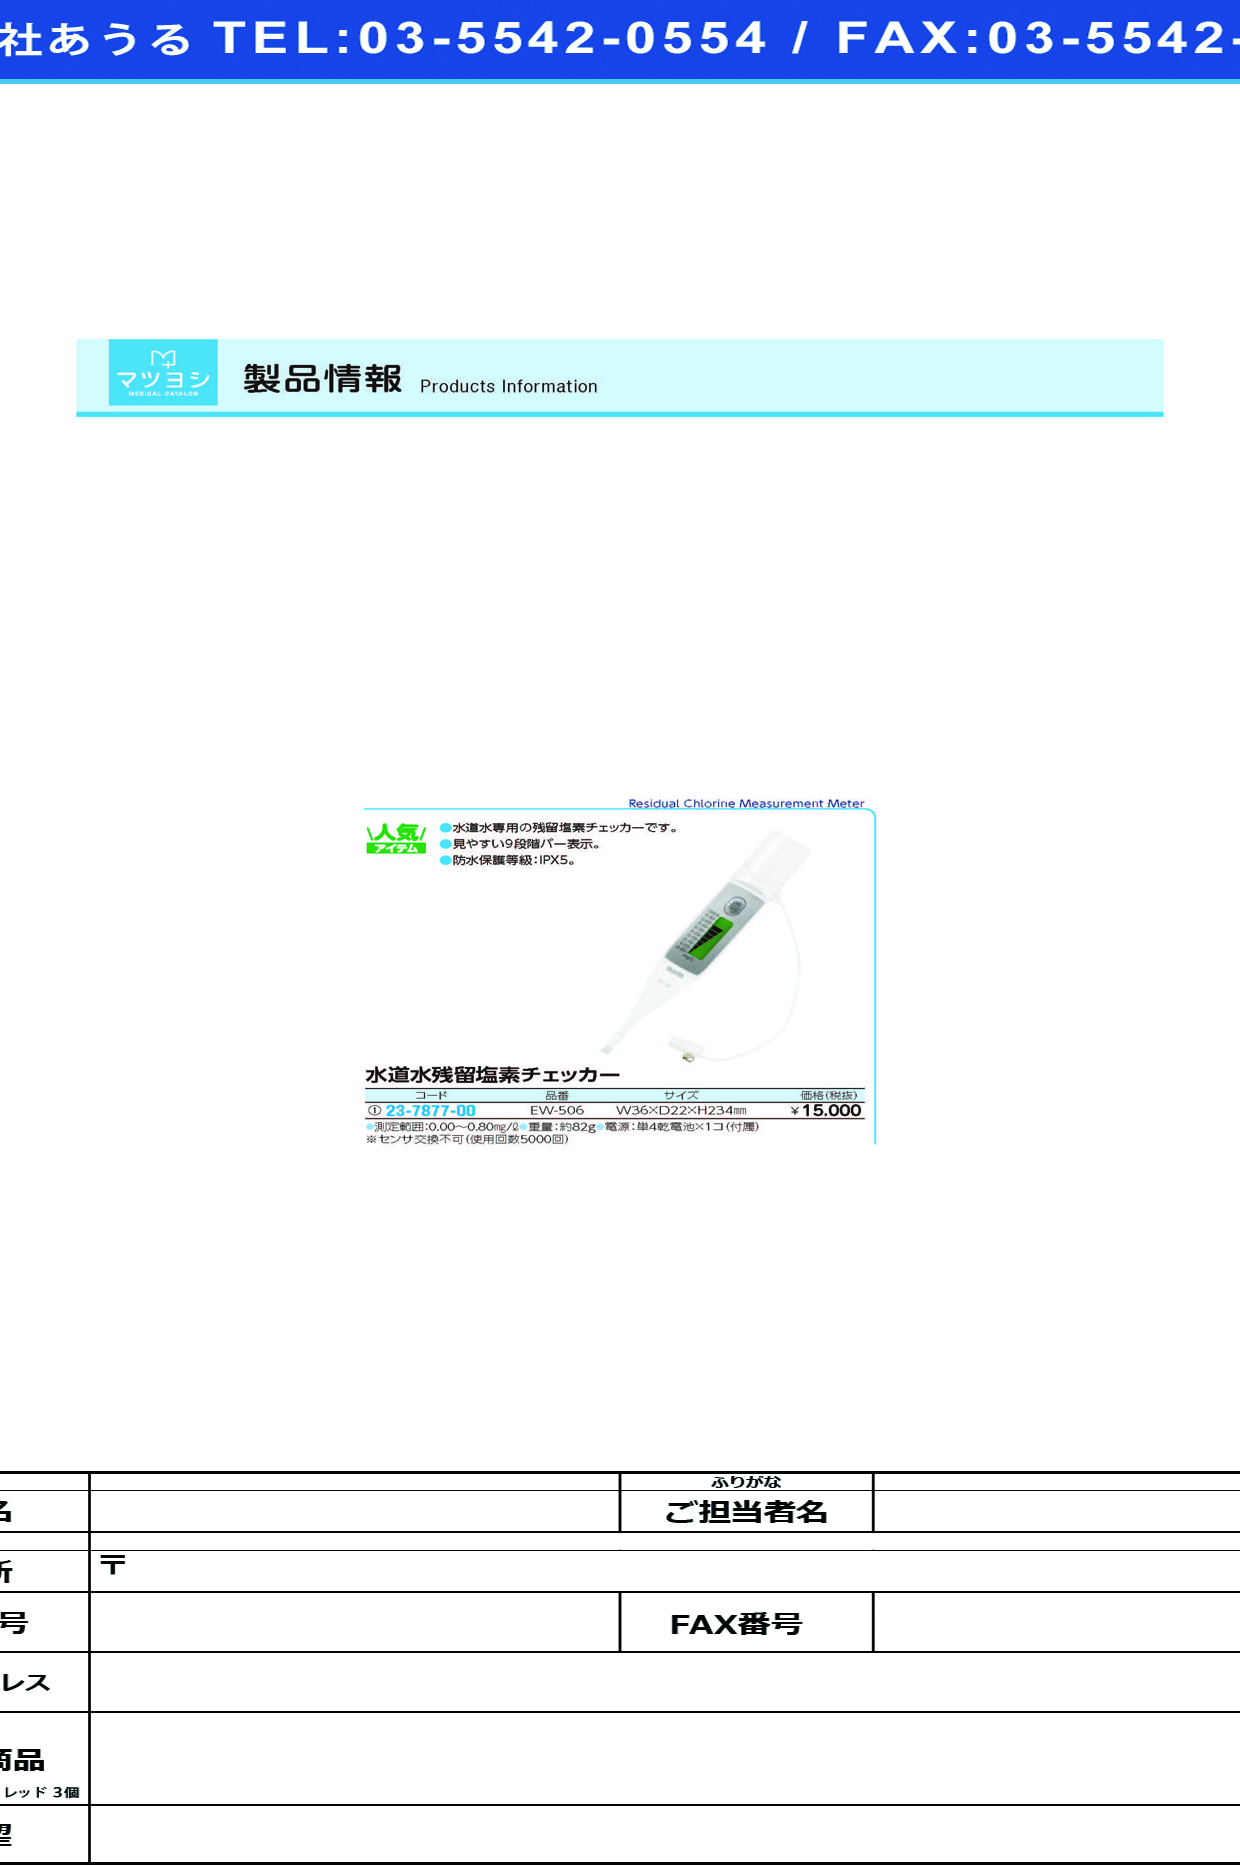 (23-7877-00)残留塩素チェッカー EW-506 ｻﾞﾝﾘｭｳｴﾝｿﾁｪｯｶｰ(タニタ)【1台単位】【2019年カタログ商品】